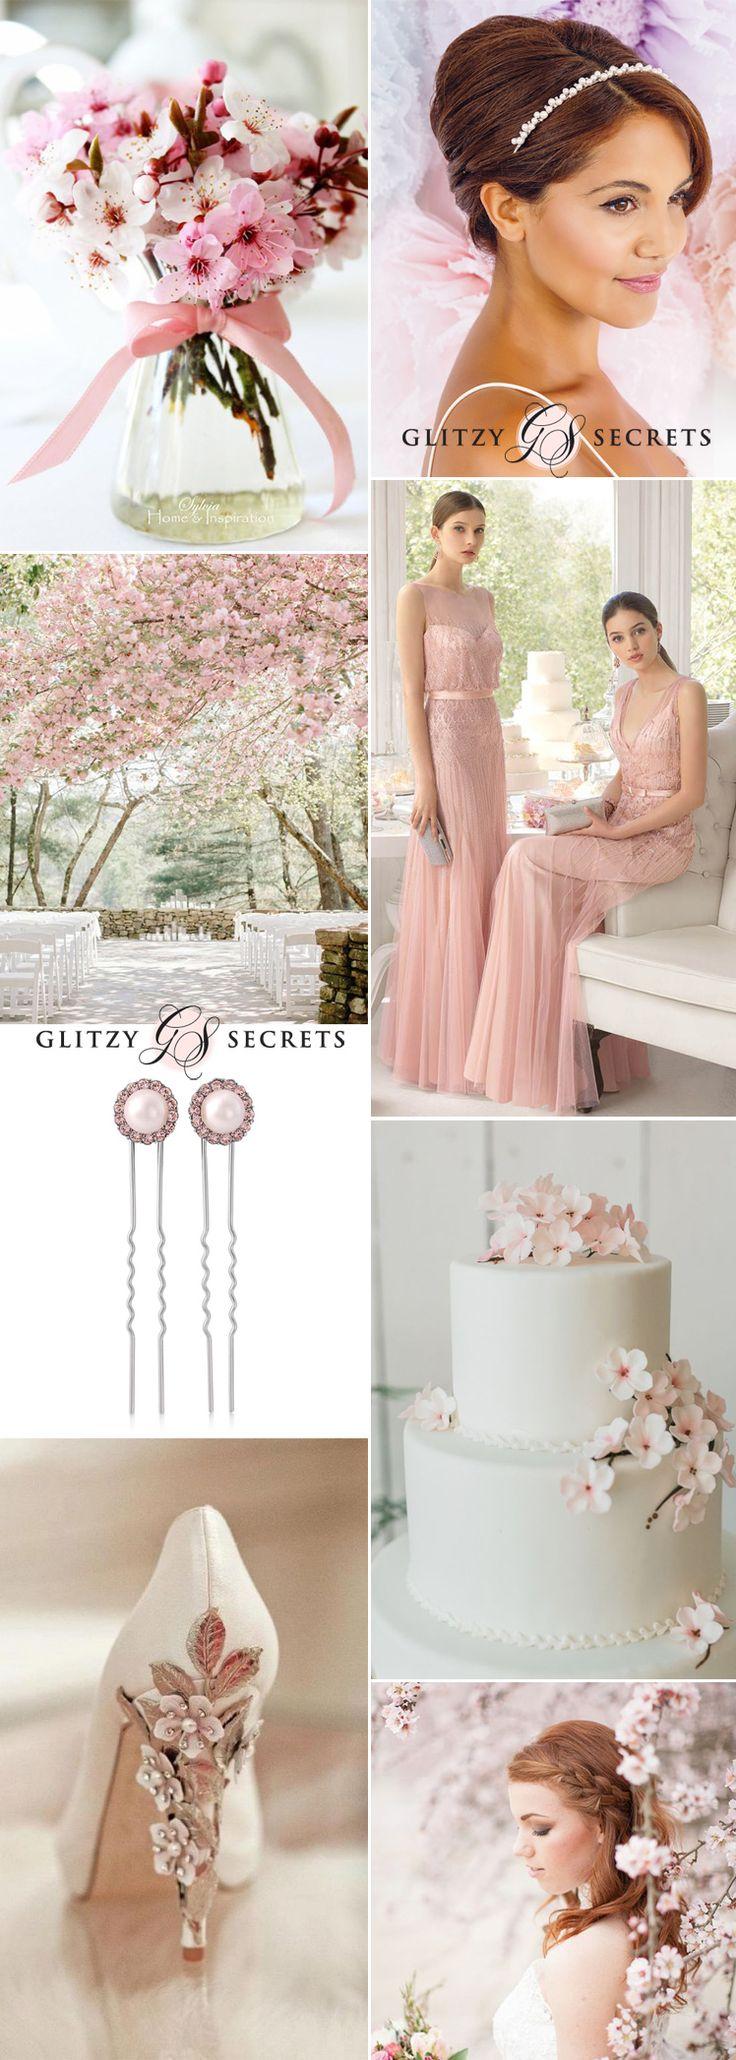 Wedding - A Cherry Blossom Wedding